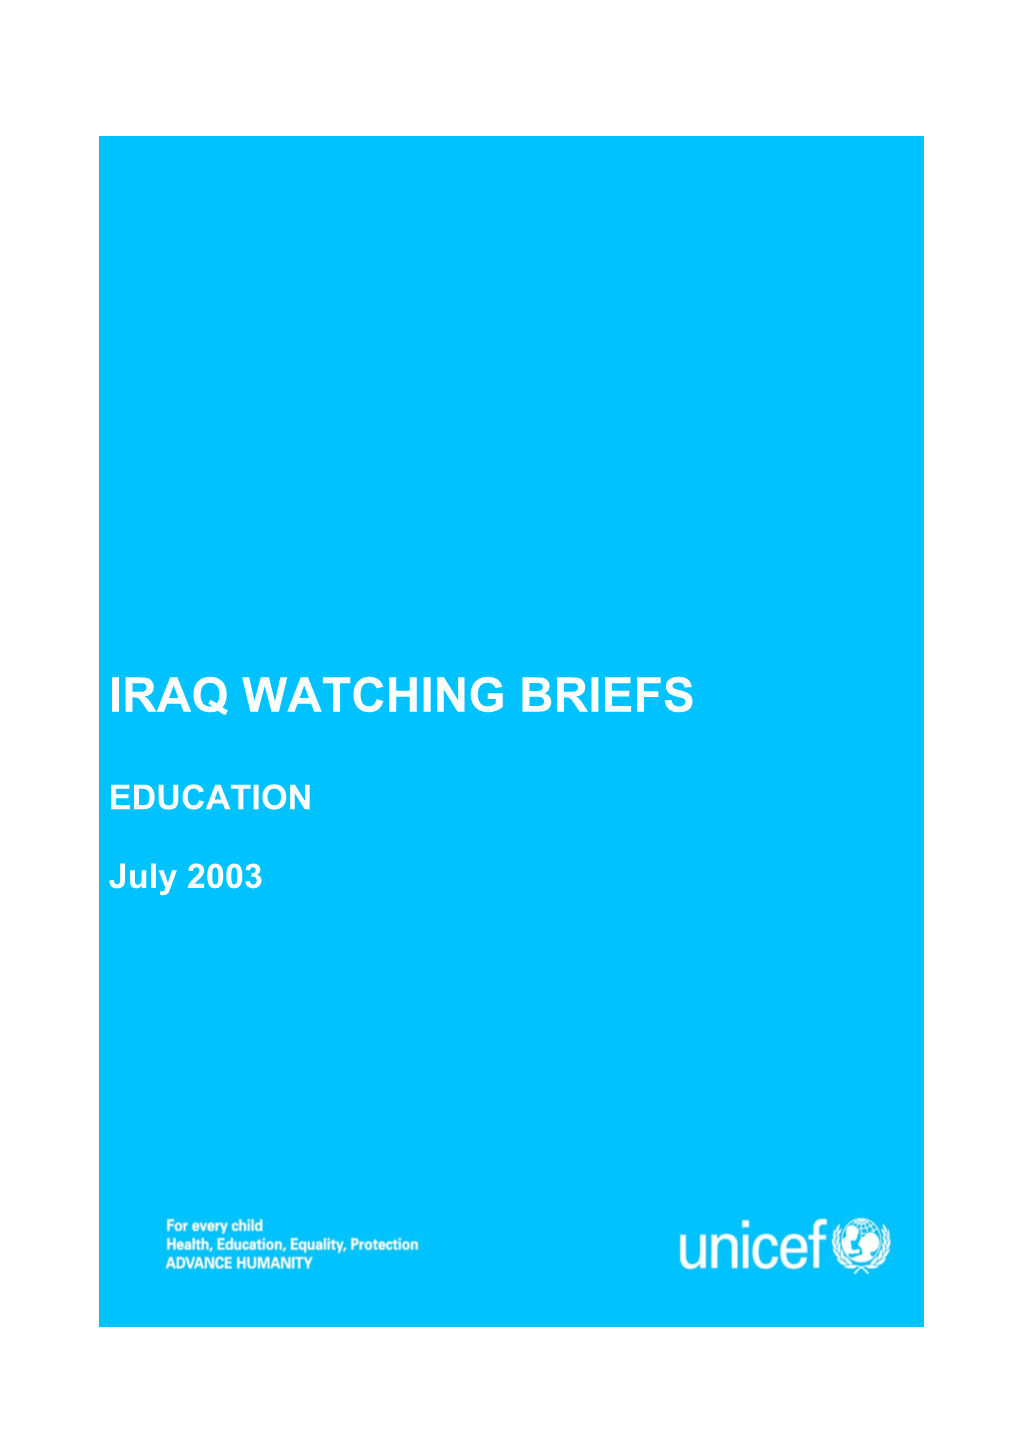 Iraq Watching Briefs